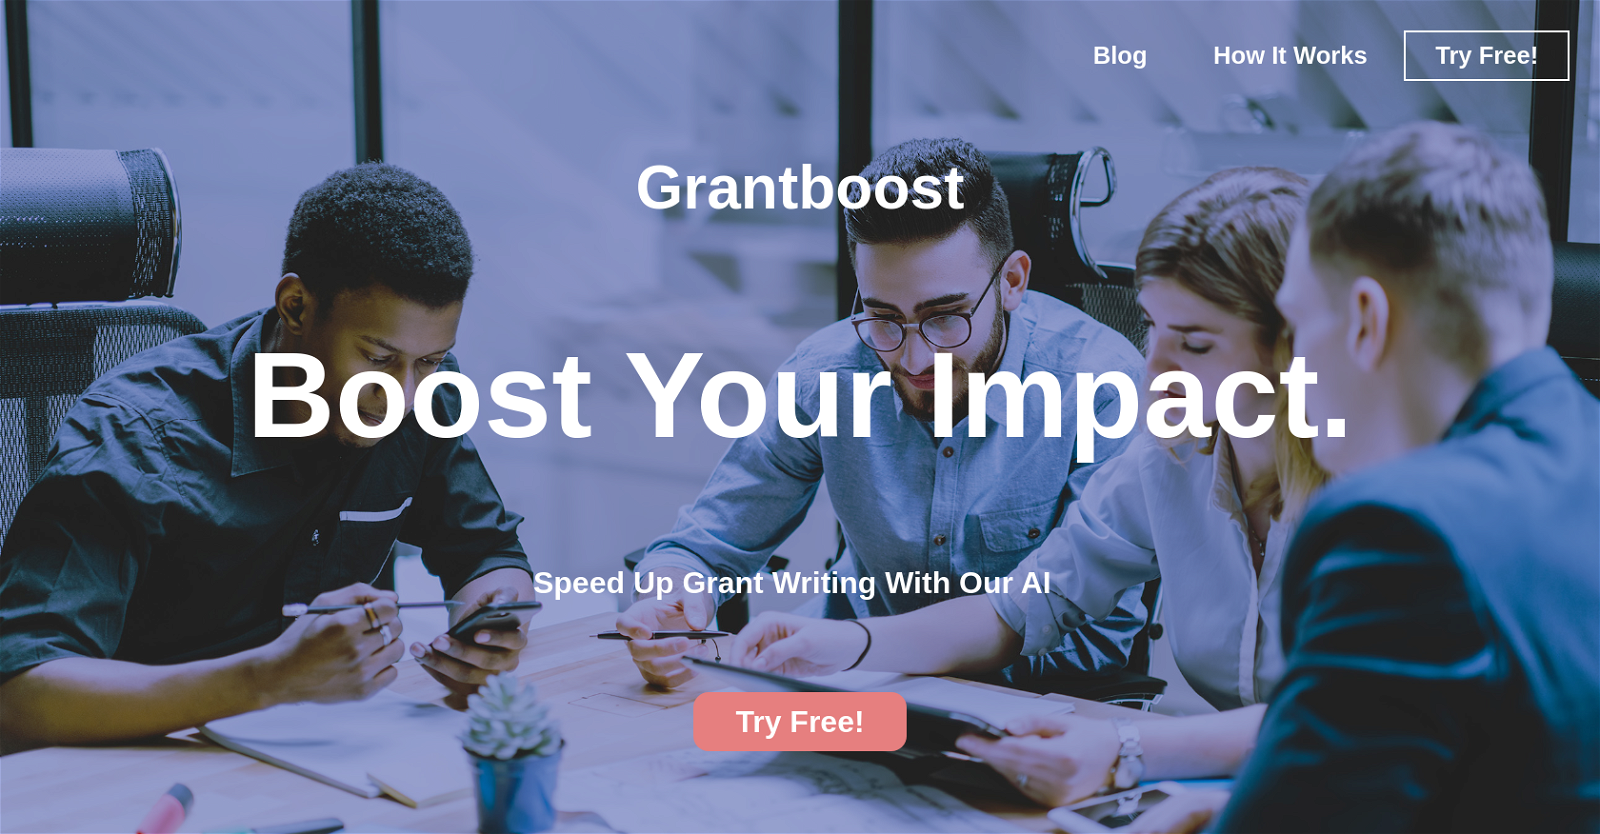 Grantboost website